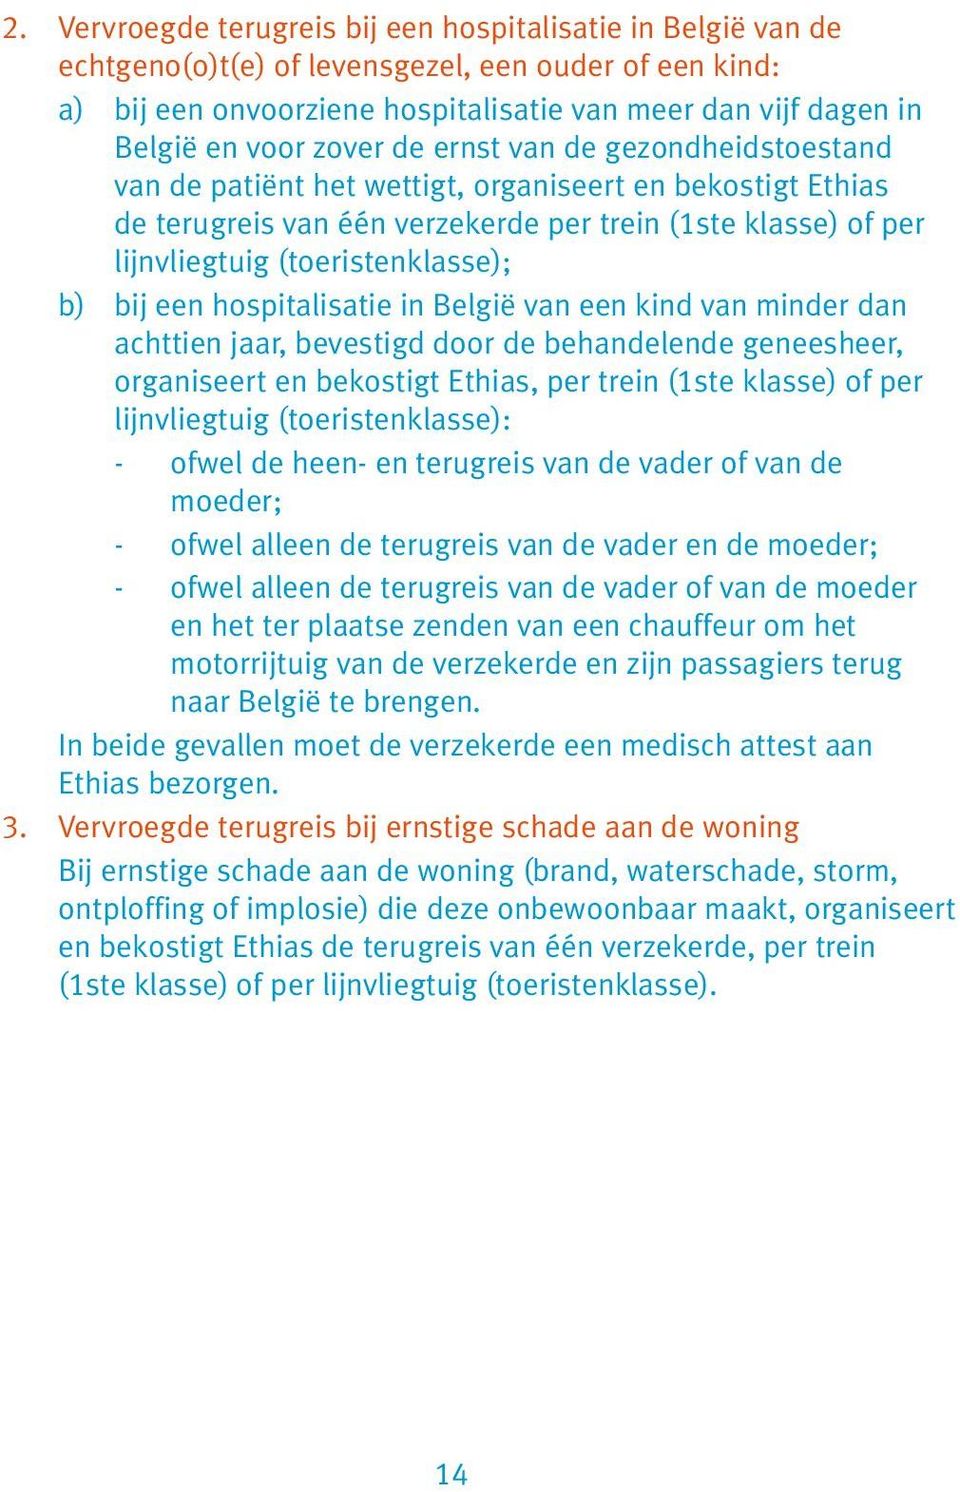 b) bij een hospitalisatie in België van een kind van minder dan achttien jaar, bevestigd door de behandelende geneesheer, organiseert en bekostigt Ethias, per trein (1ste klasse) of per lijnvliegtuig